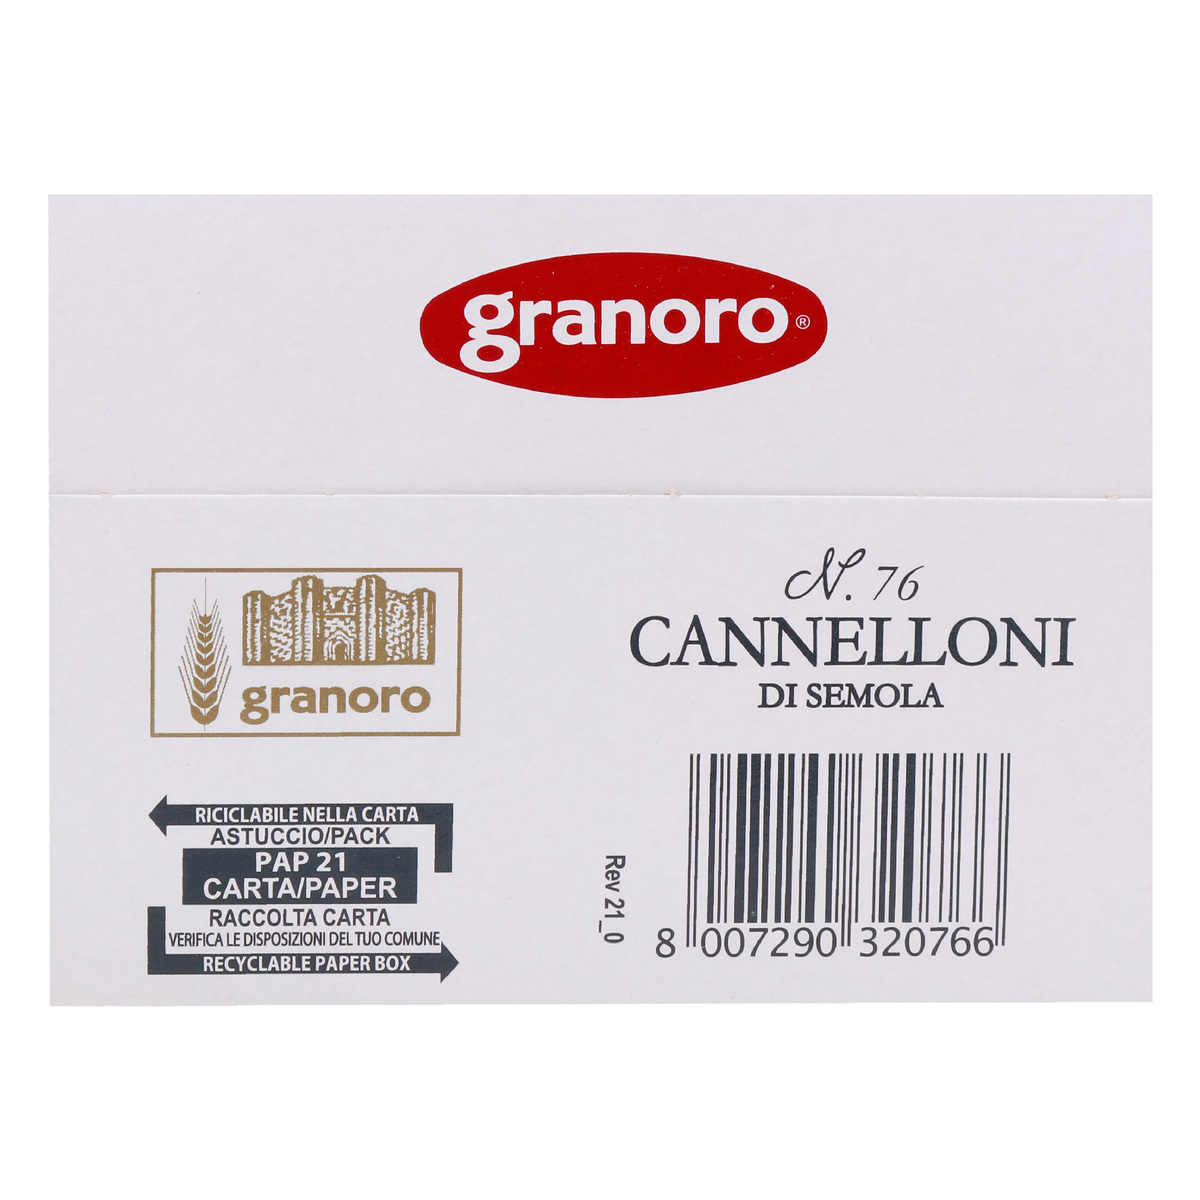 Granoro Cannelloni No. 76 250 g